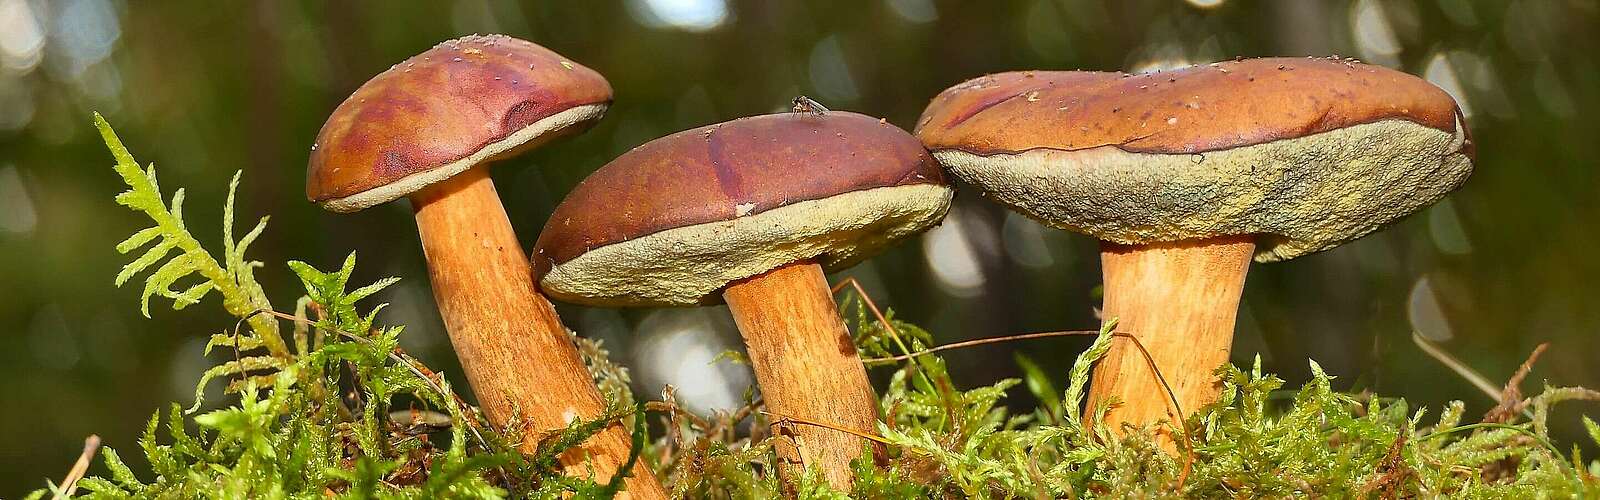 Pilze im Wald,
        
    

        Foto: Fotograf / Lizenz - Media Import/Krzysztof Niewolny